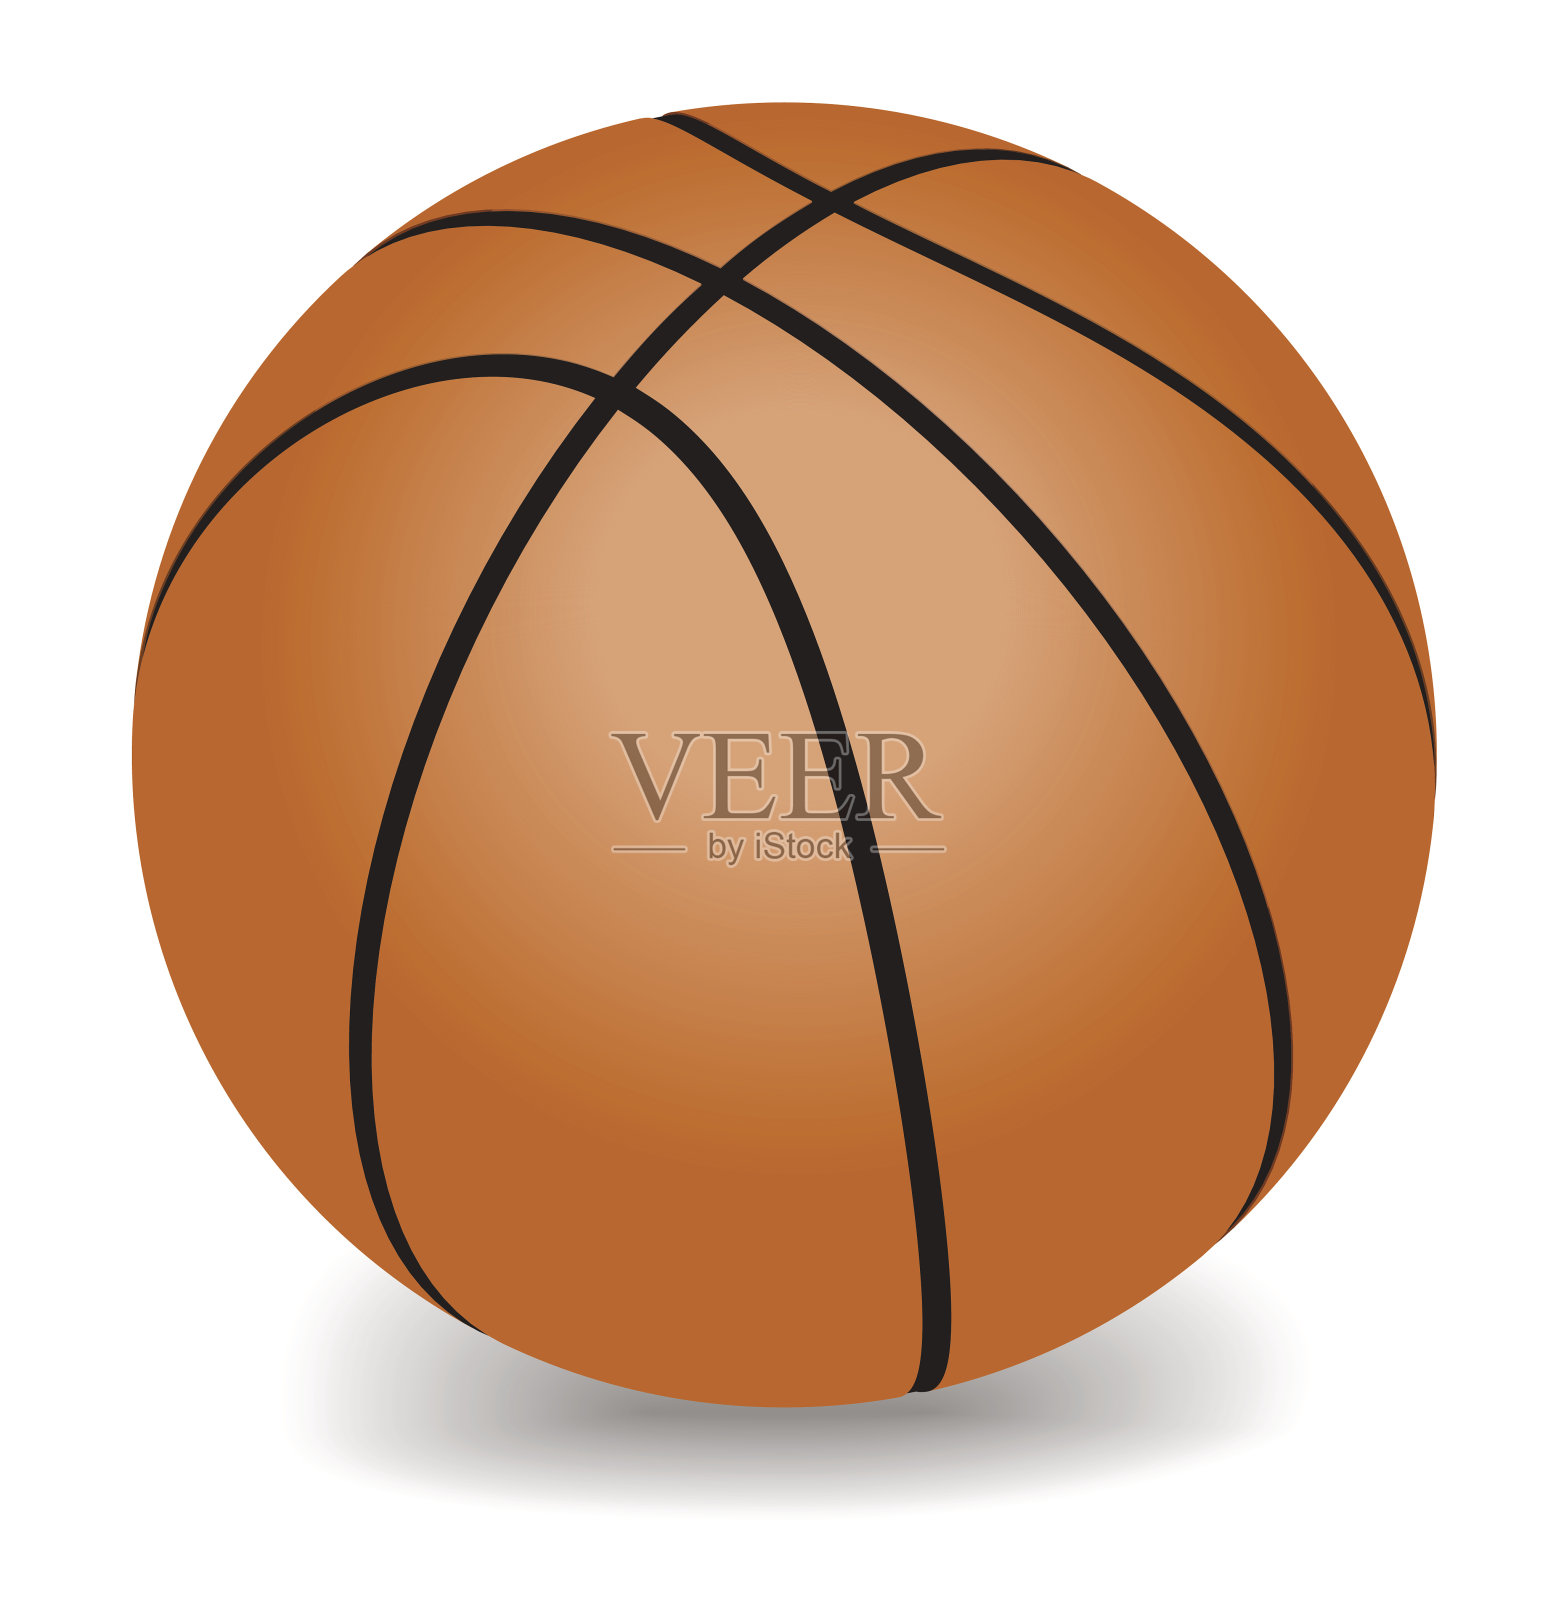 向量的篮球插画图片素材